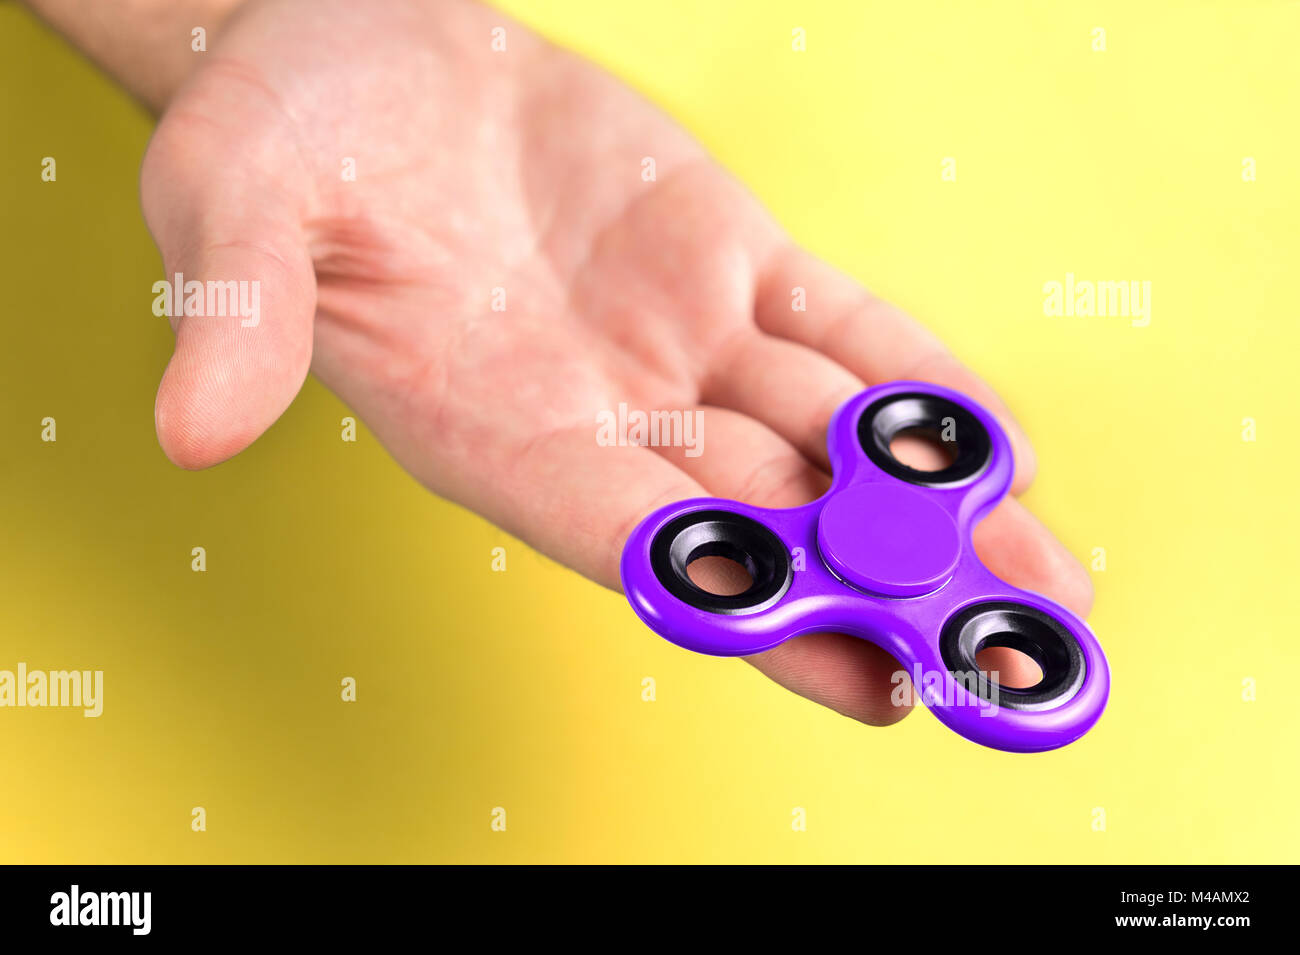 Lila und Violett zappeln Spinner an Hand, Handfläche und Finger gegen den gelben Hintergrund. Stockfoto